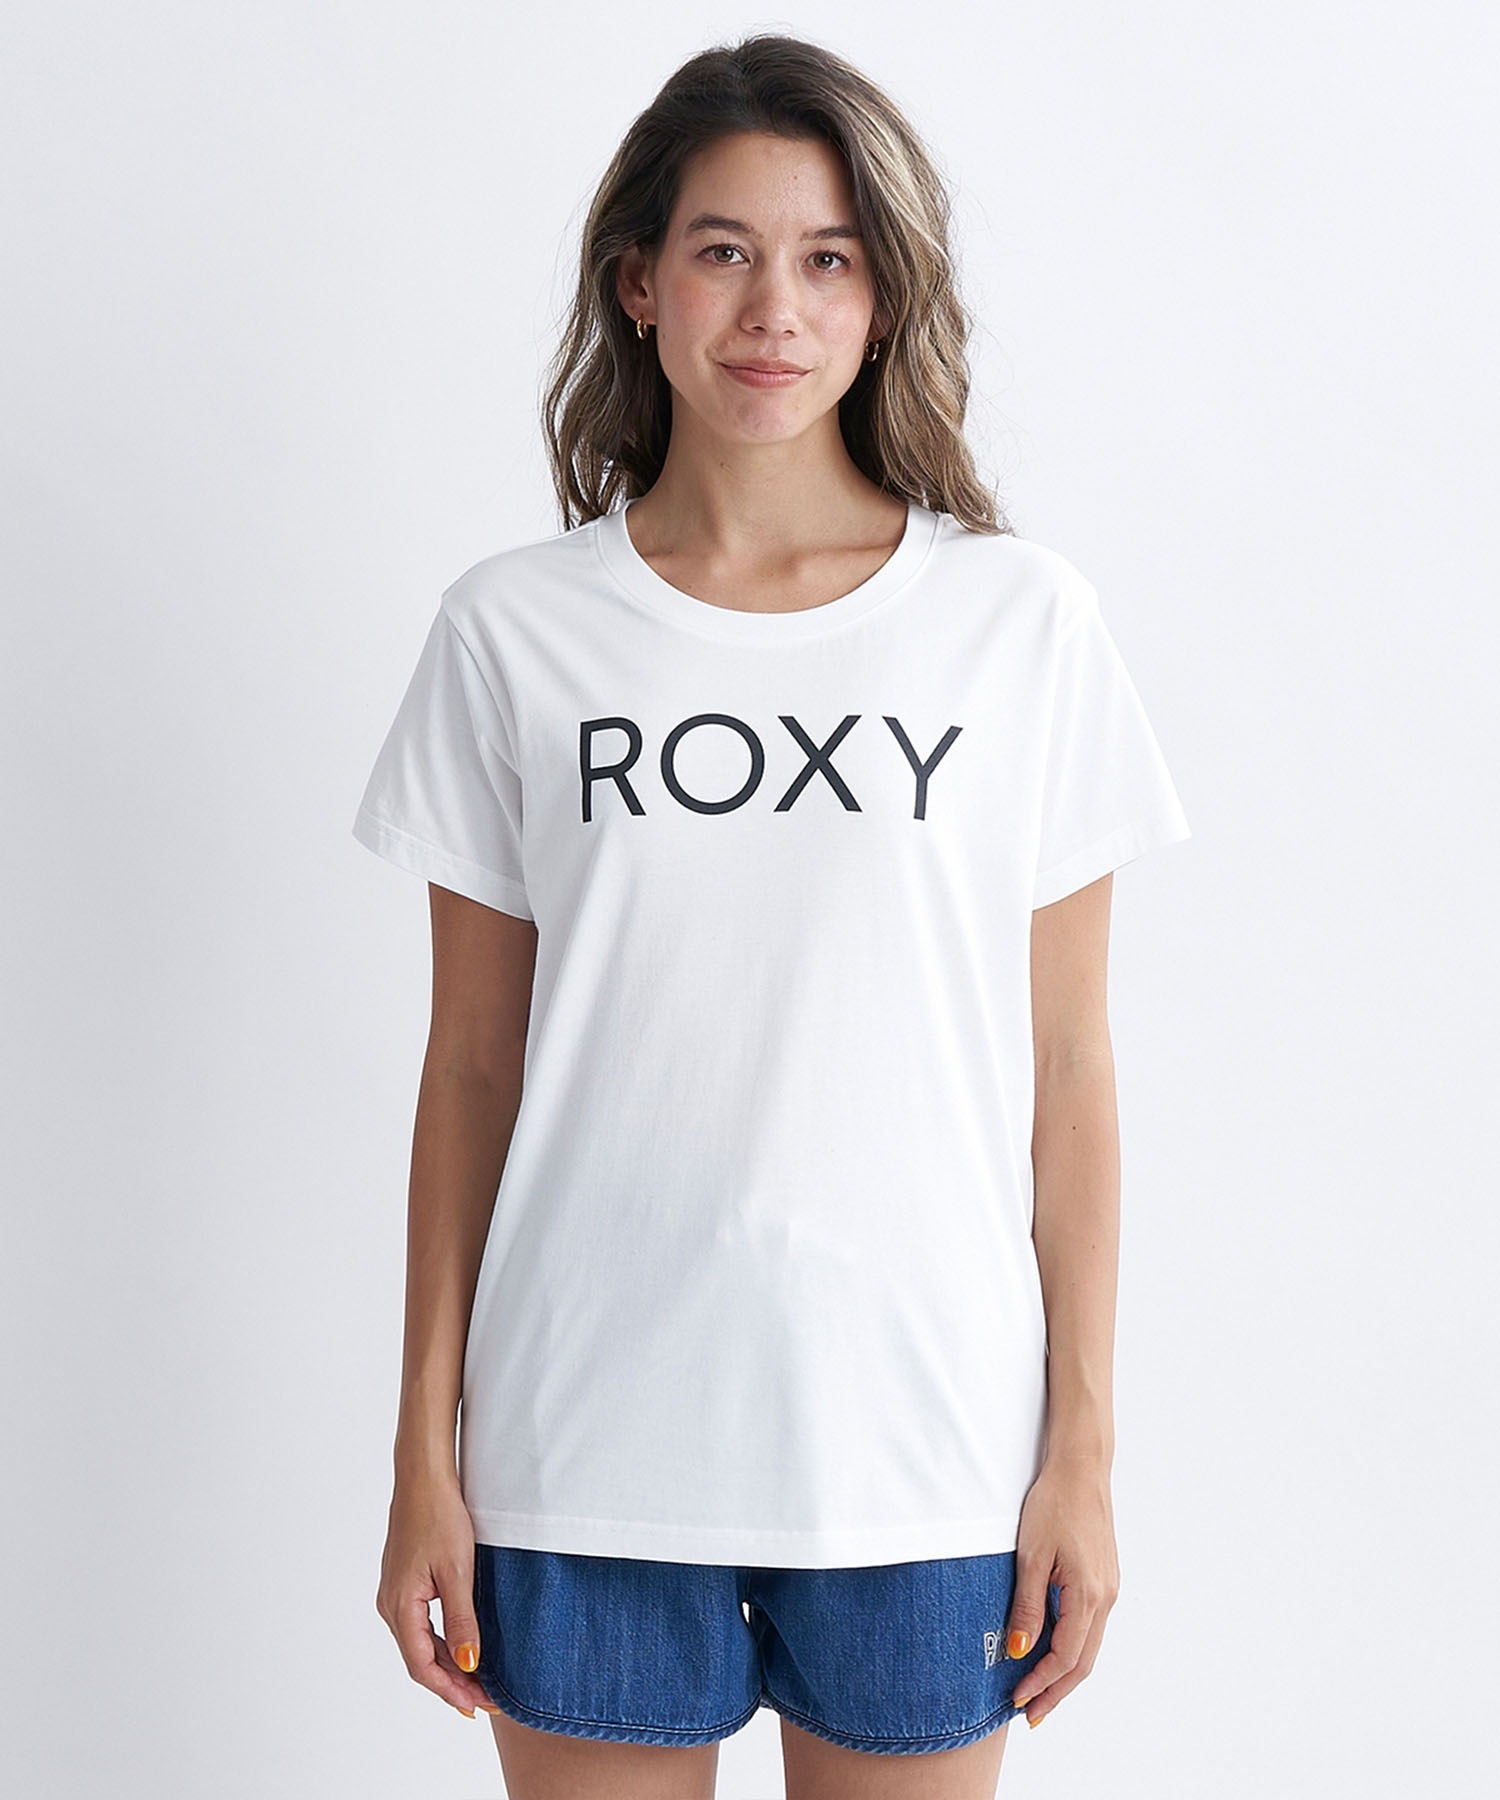 ROXY ロキシー スポーツ レディース 半袖 Tシャツ クルーネック RST241079(WHT-S)